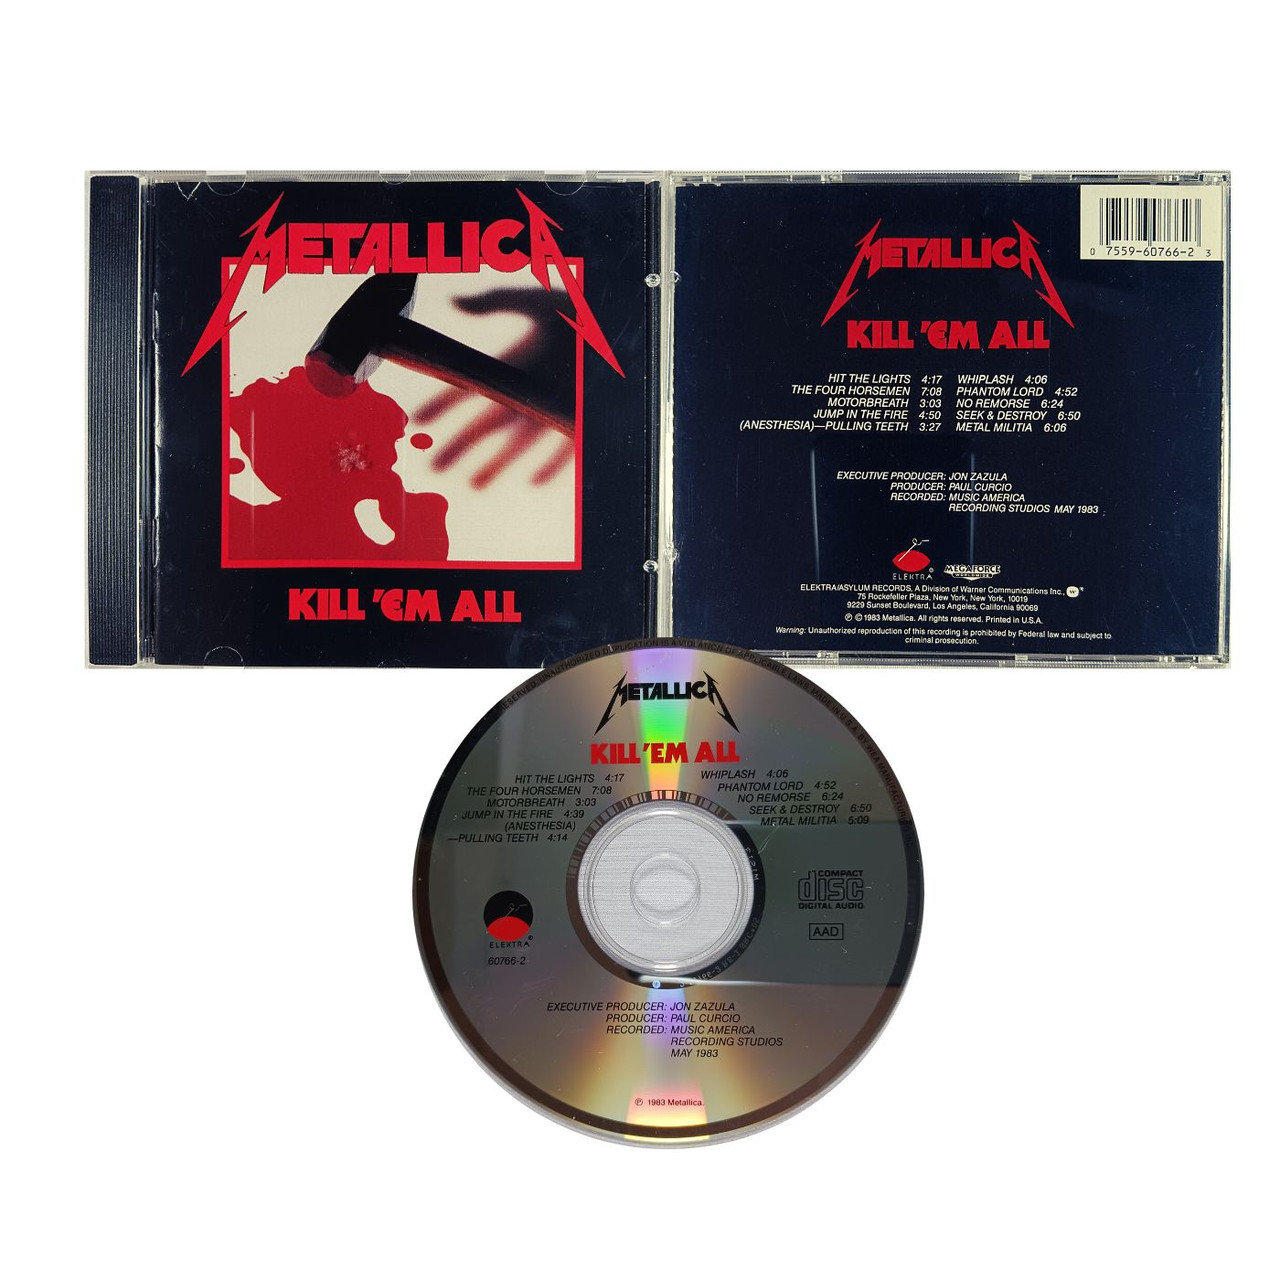 METALLICA Kill 'em All CD